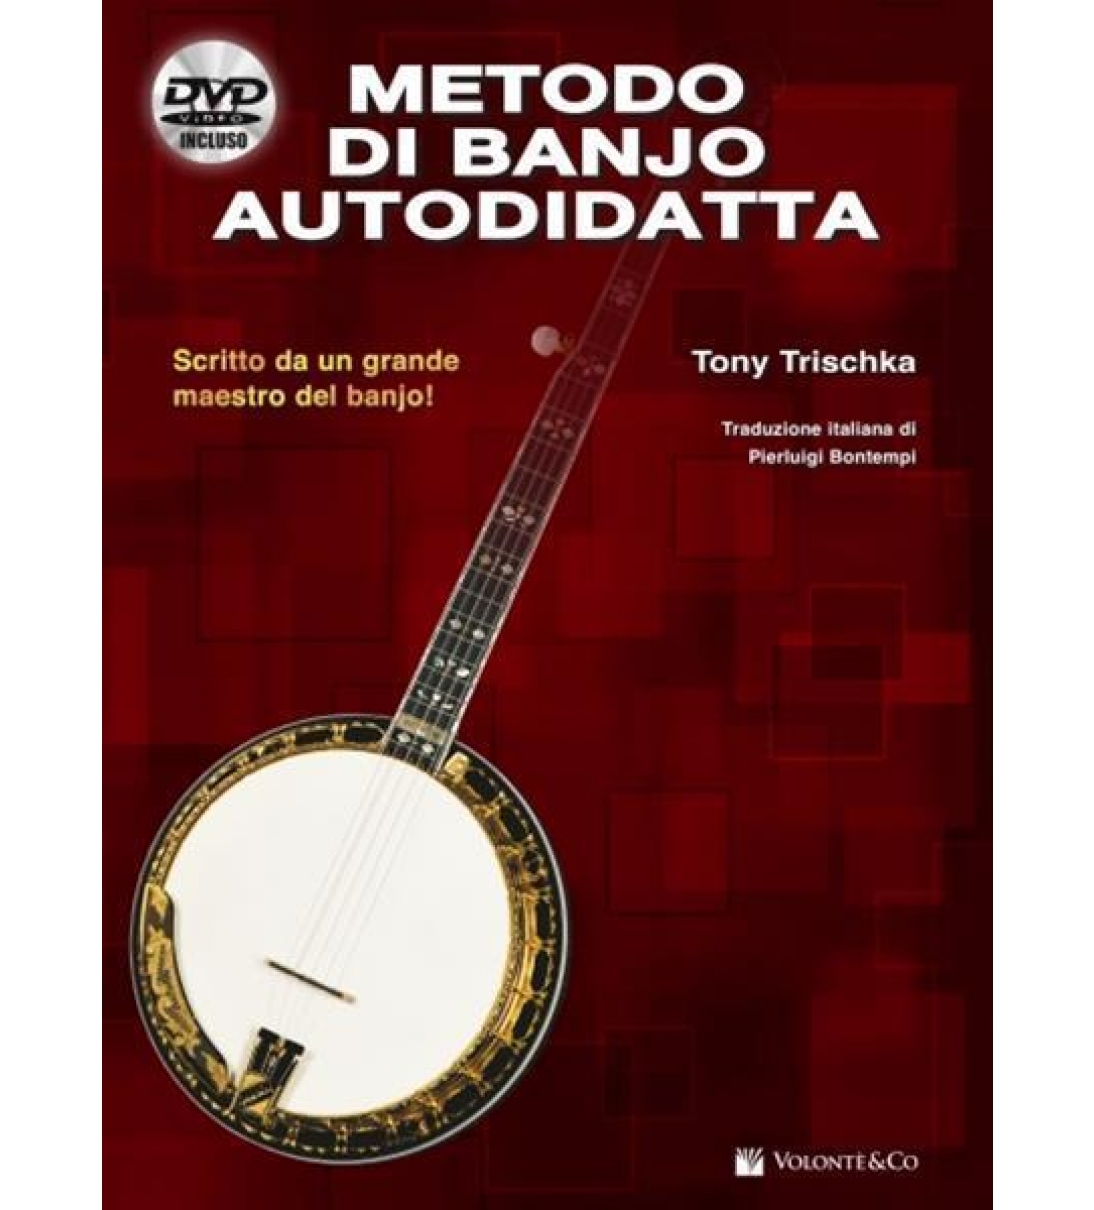 Metodo di Banjo Autodidatta (con DVD)